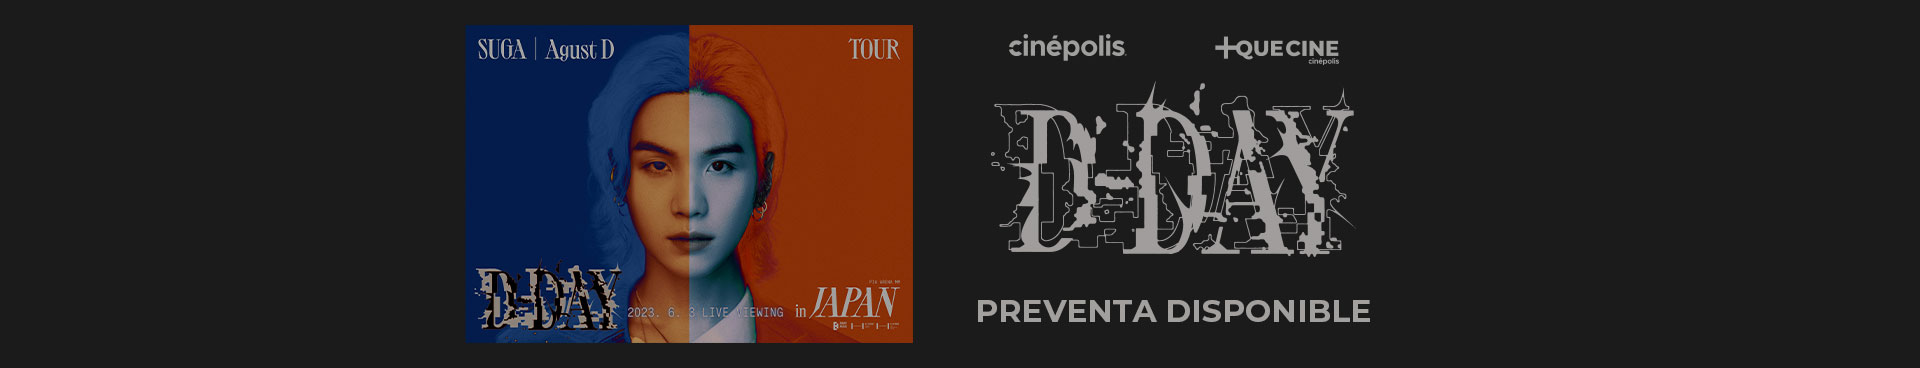 SUGA AGUST D TOUR D-DAY IN JAPAN - EN VIVO